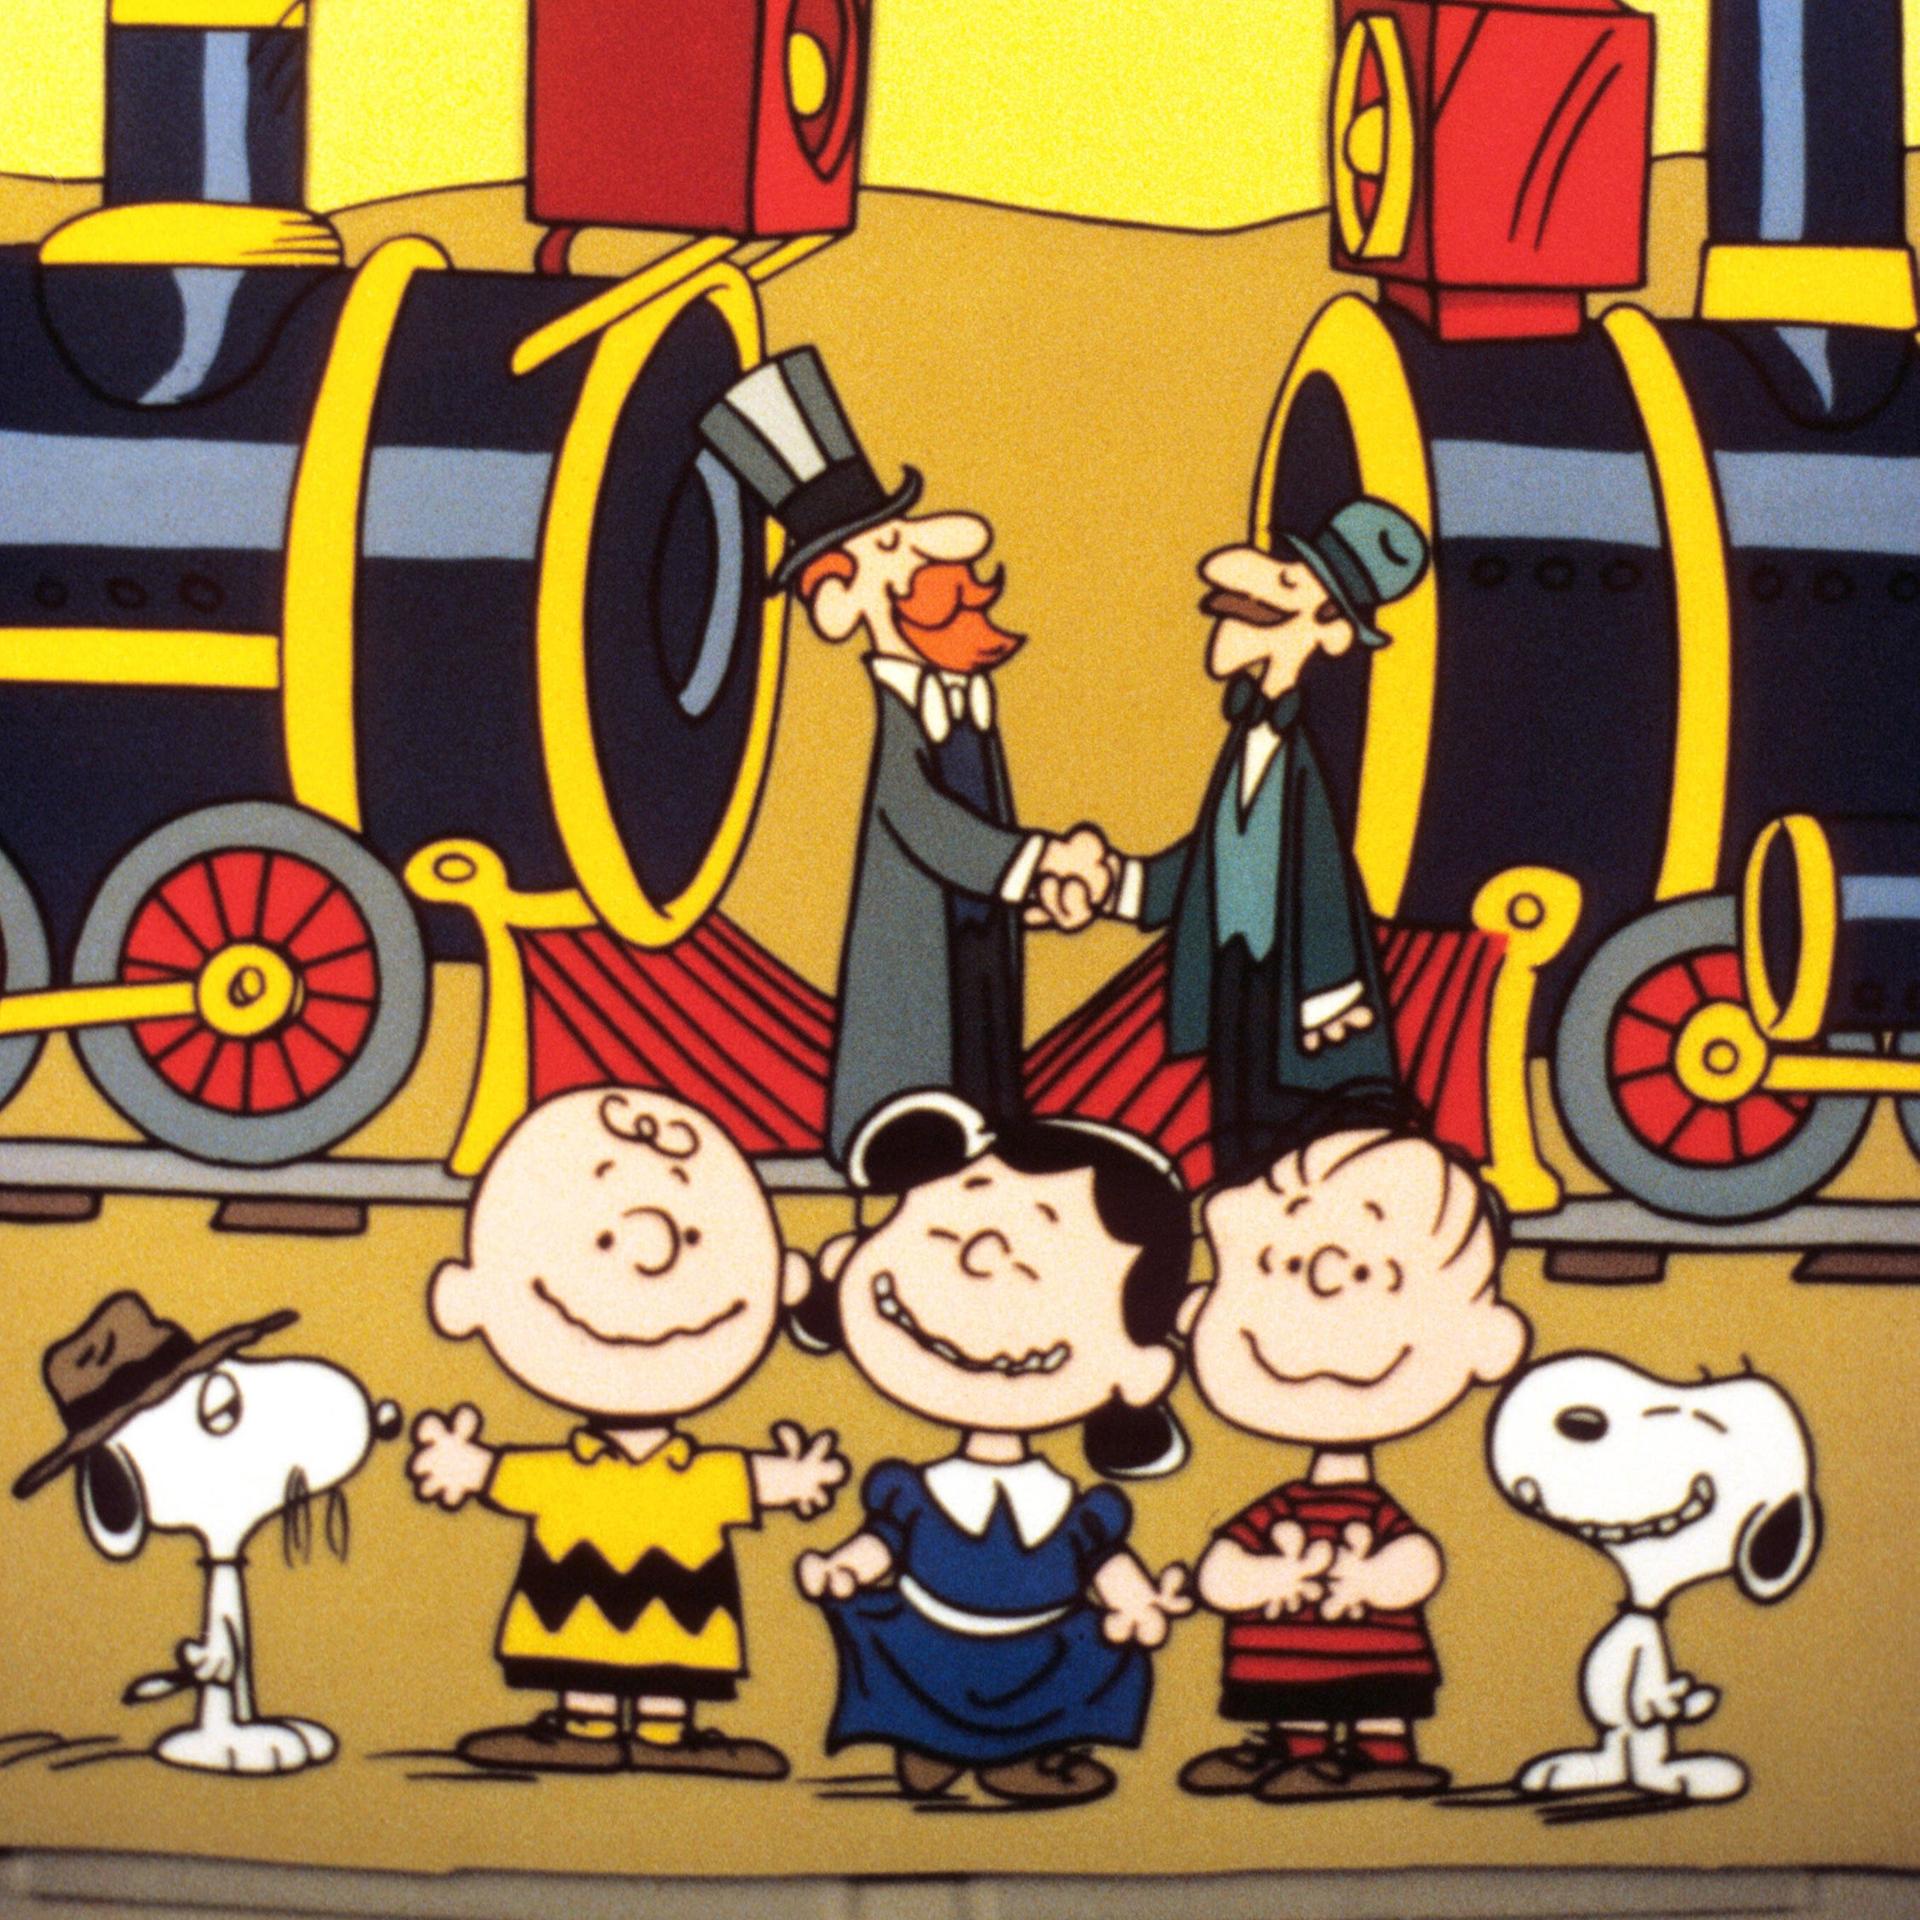 Ein Szenenfoto aus der Zeichentrickserie "The Building of the Transcontinental Railroad" mit den "Peanuts". Im Vordergrund des Bildes sind die "Peanuts"-Figuren Charlie Brown, Lucy und Linus sowie der Hund Snoopy zu sehen. 